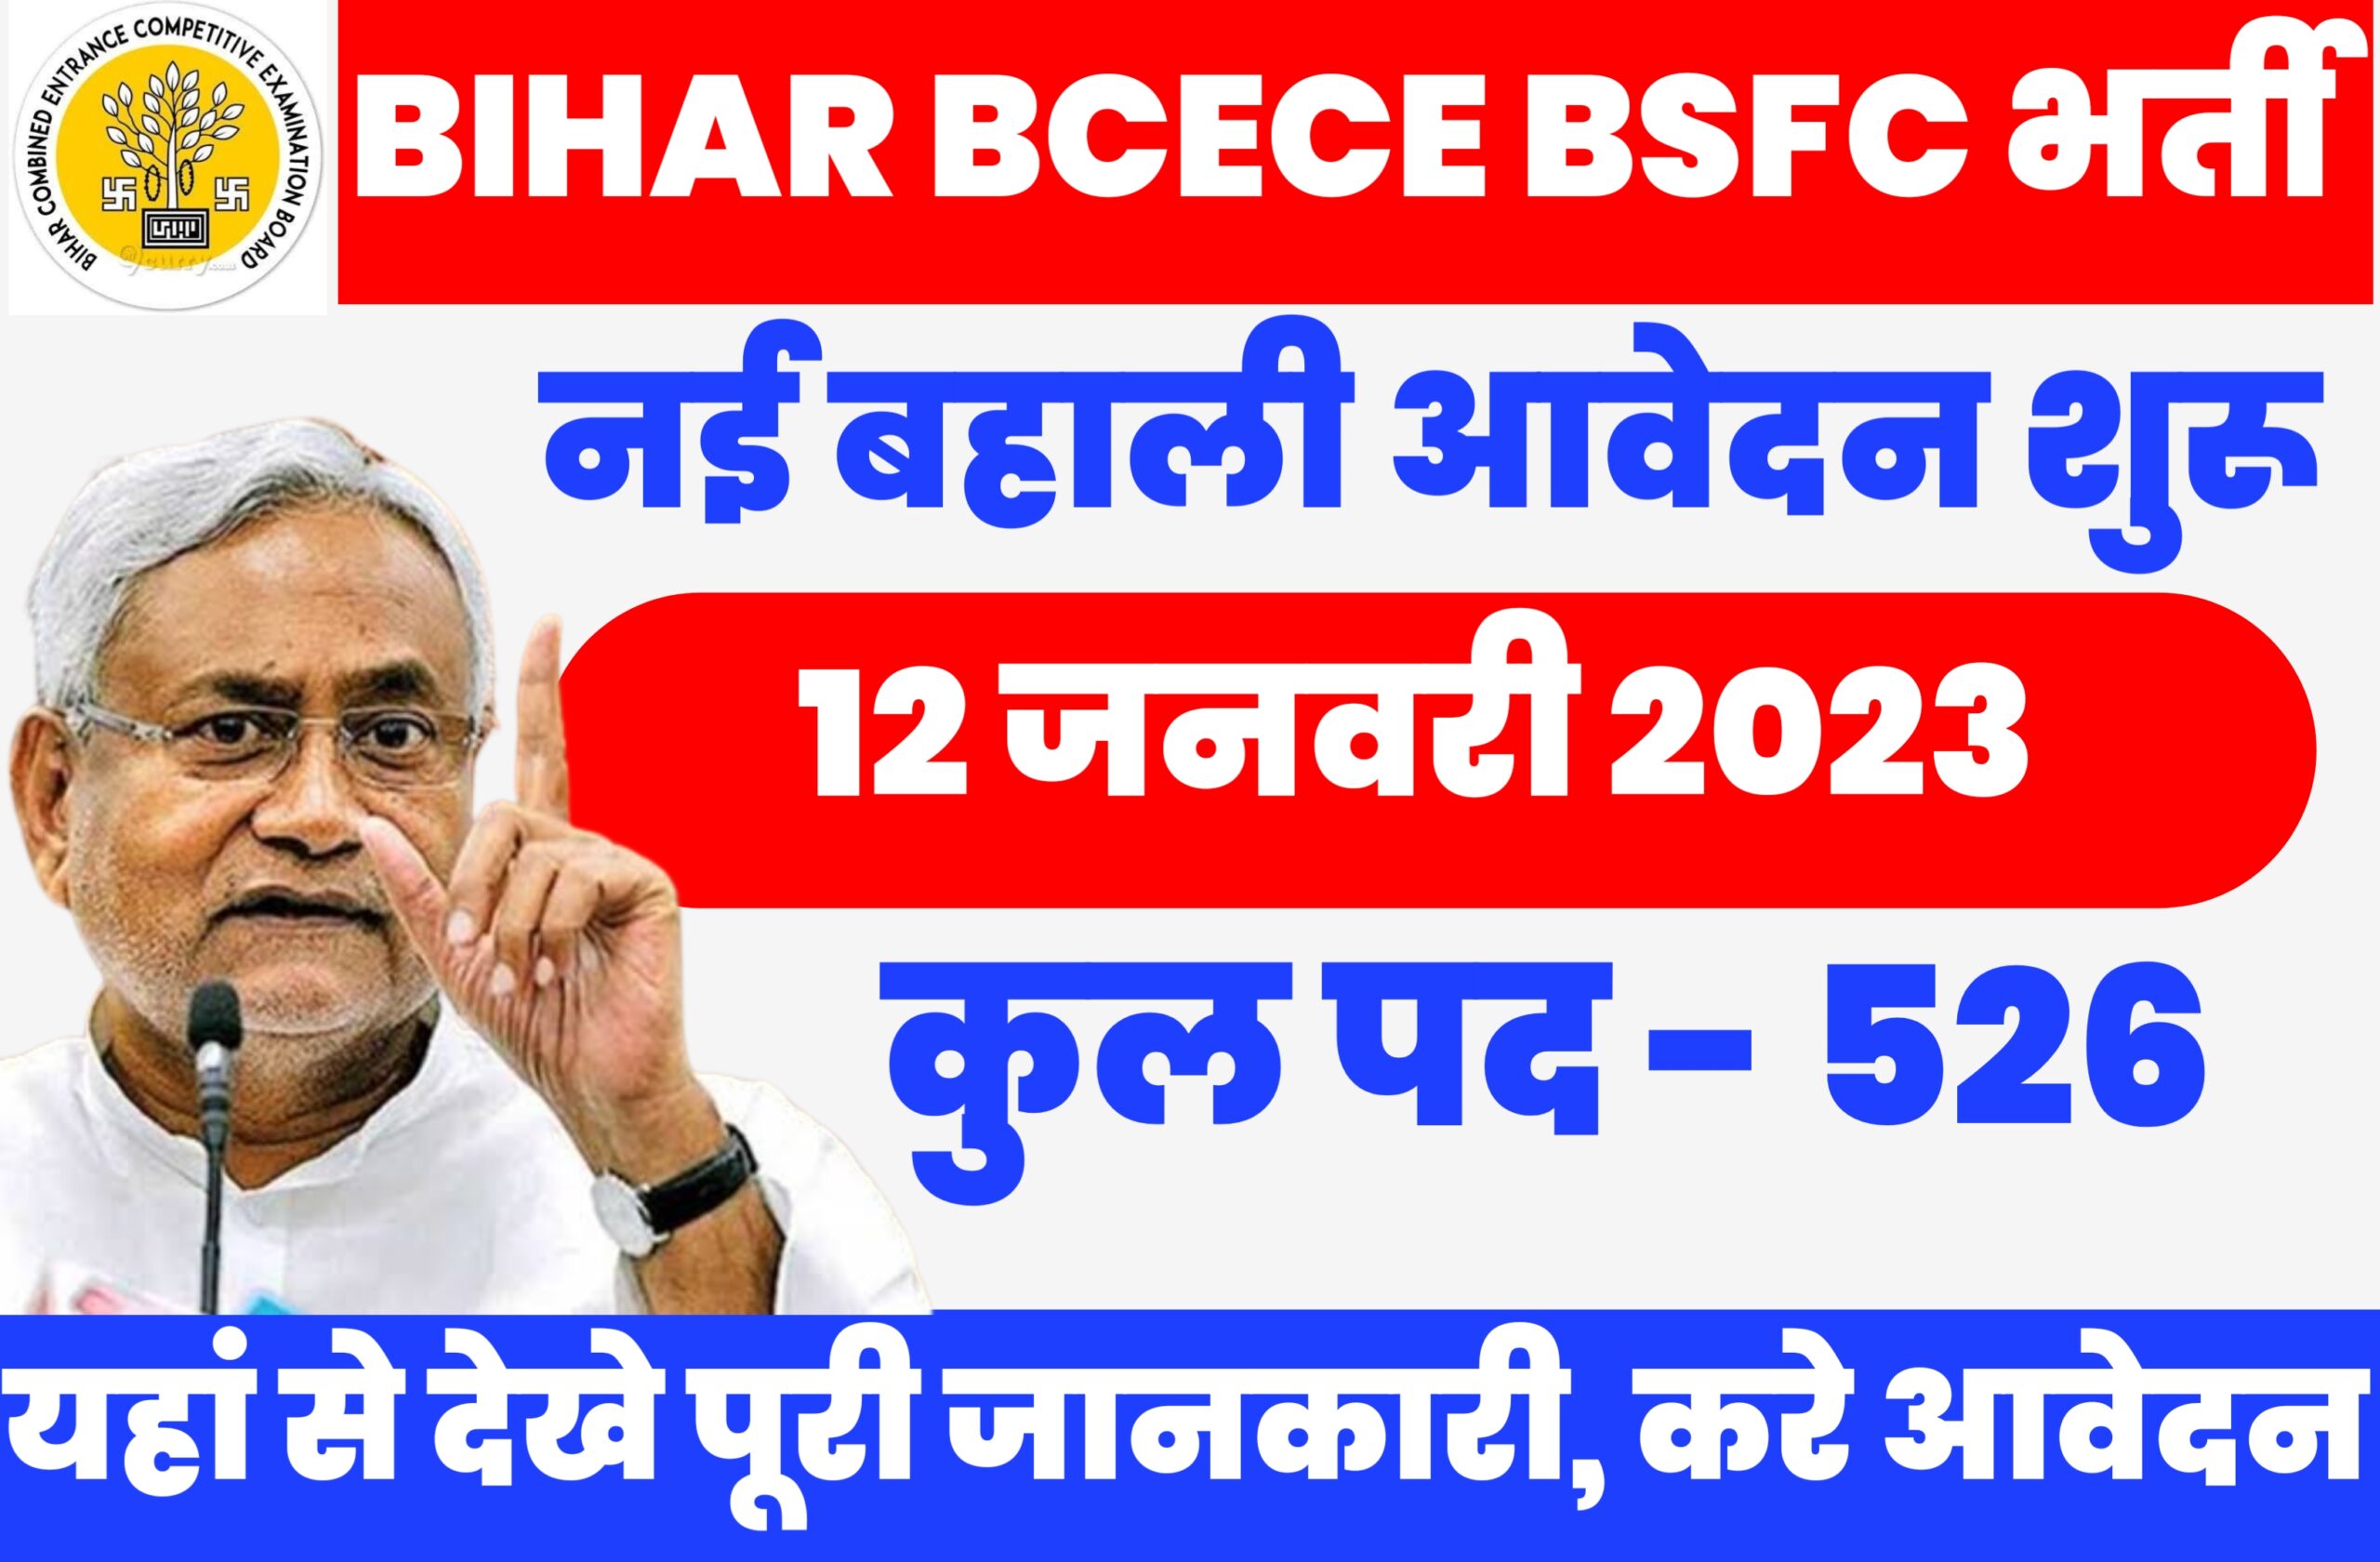 Bihar BCECE BSFC VACANCY 2023